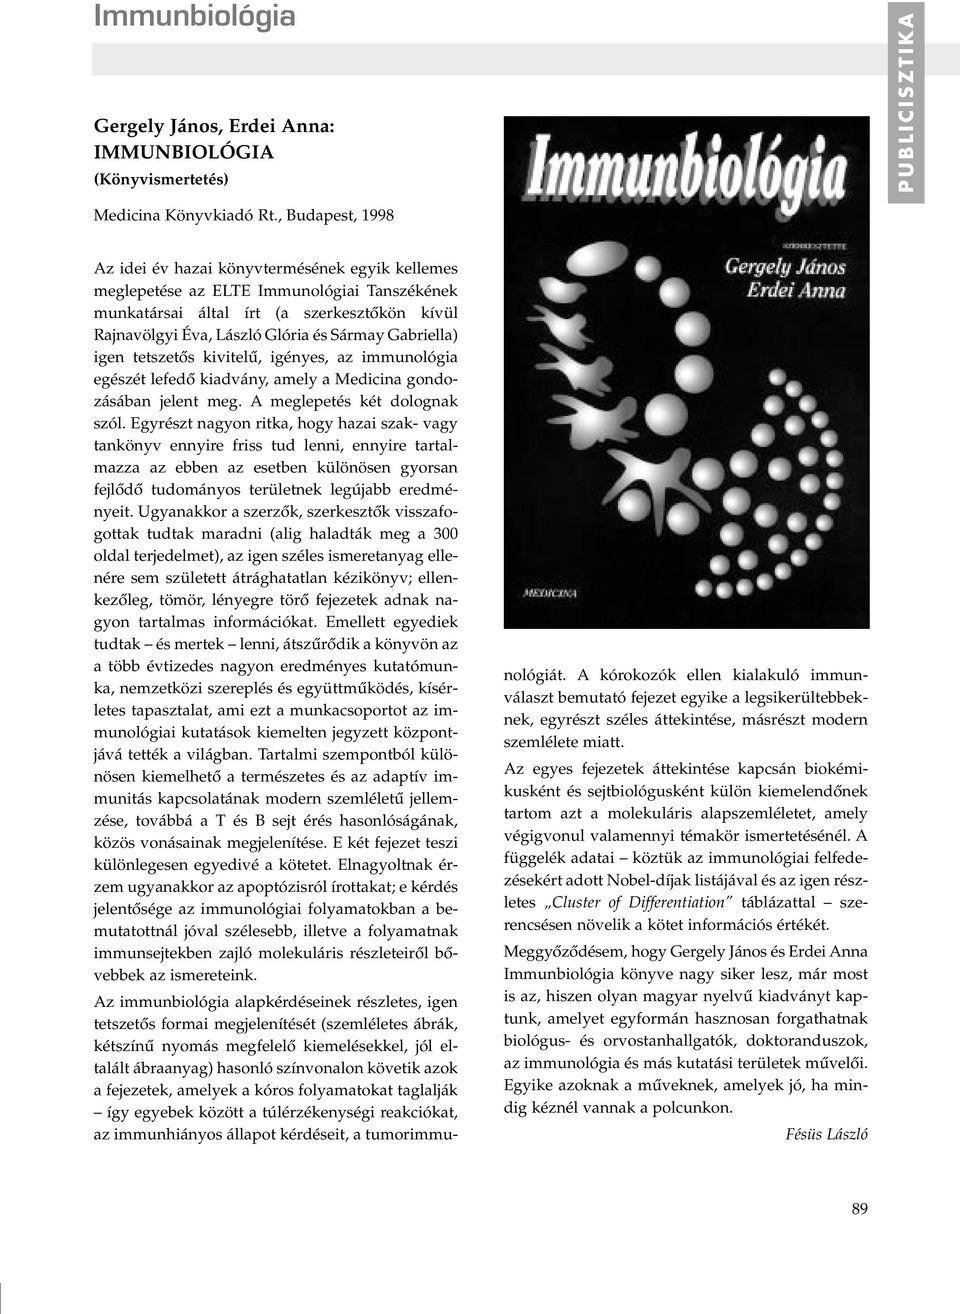 Gabriella) igen tetszetôs kivitelû, igényes, az immunológia egészét lefedô kiadvány, amely a Medicina gondozásában jelent meg. A meglepetés két dolognak szól.